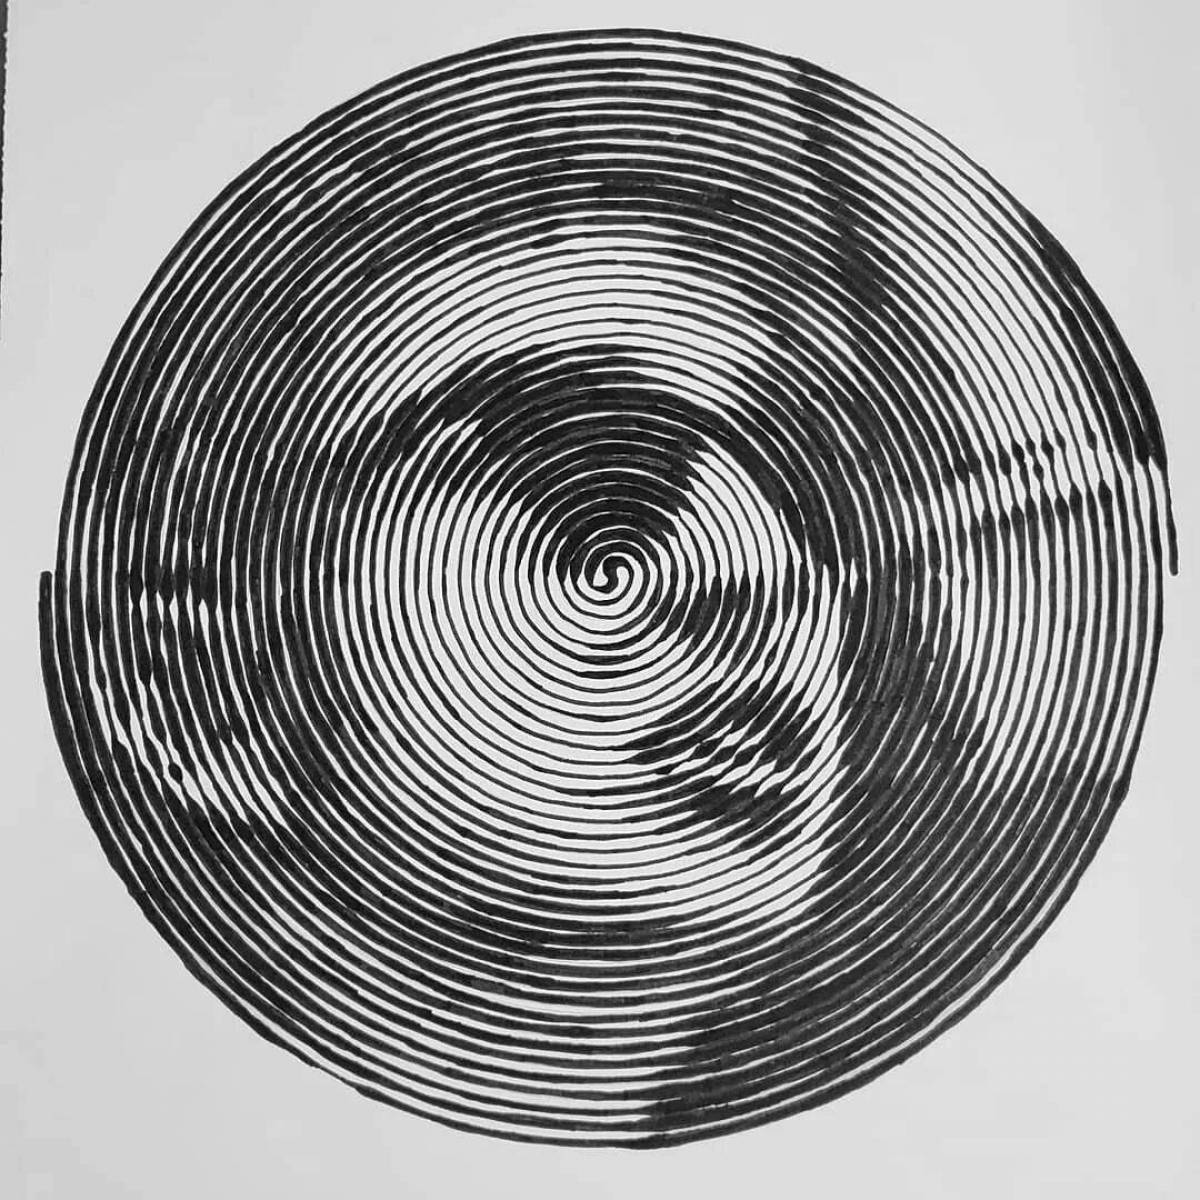 Enchanting circle spiral coloring page